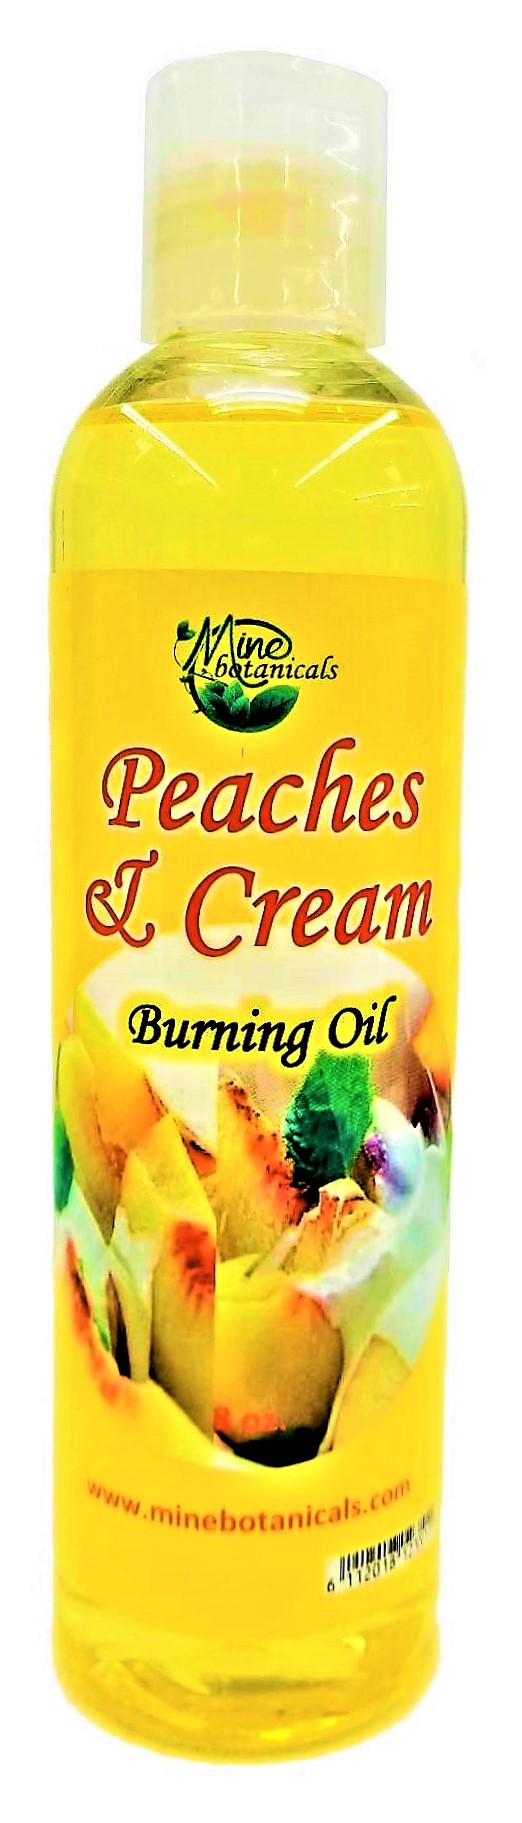 Peaches & Cream Burning Oil